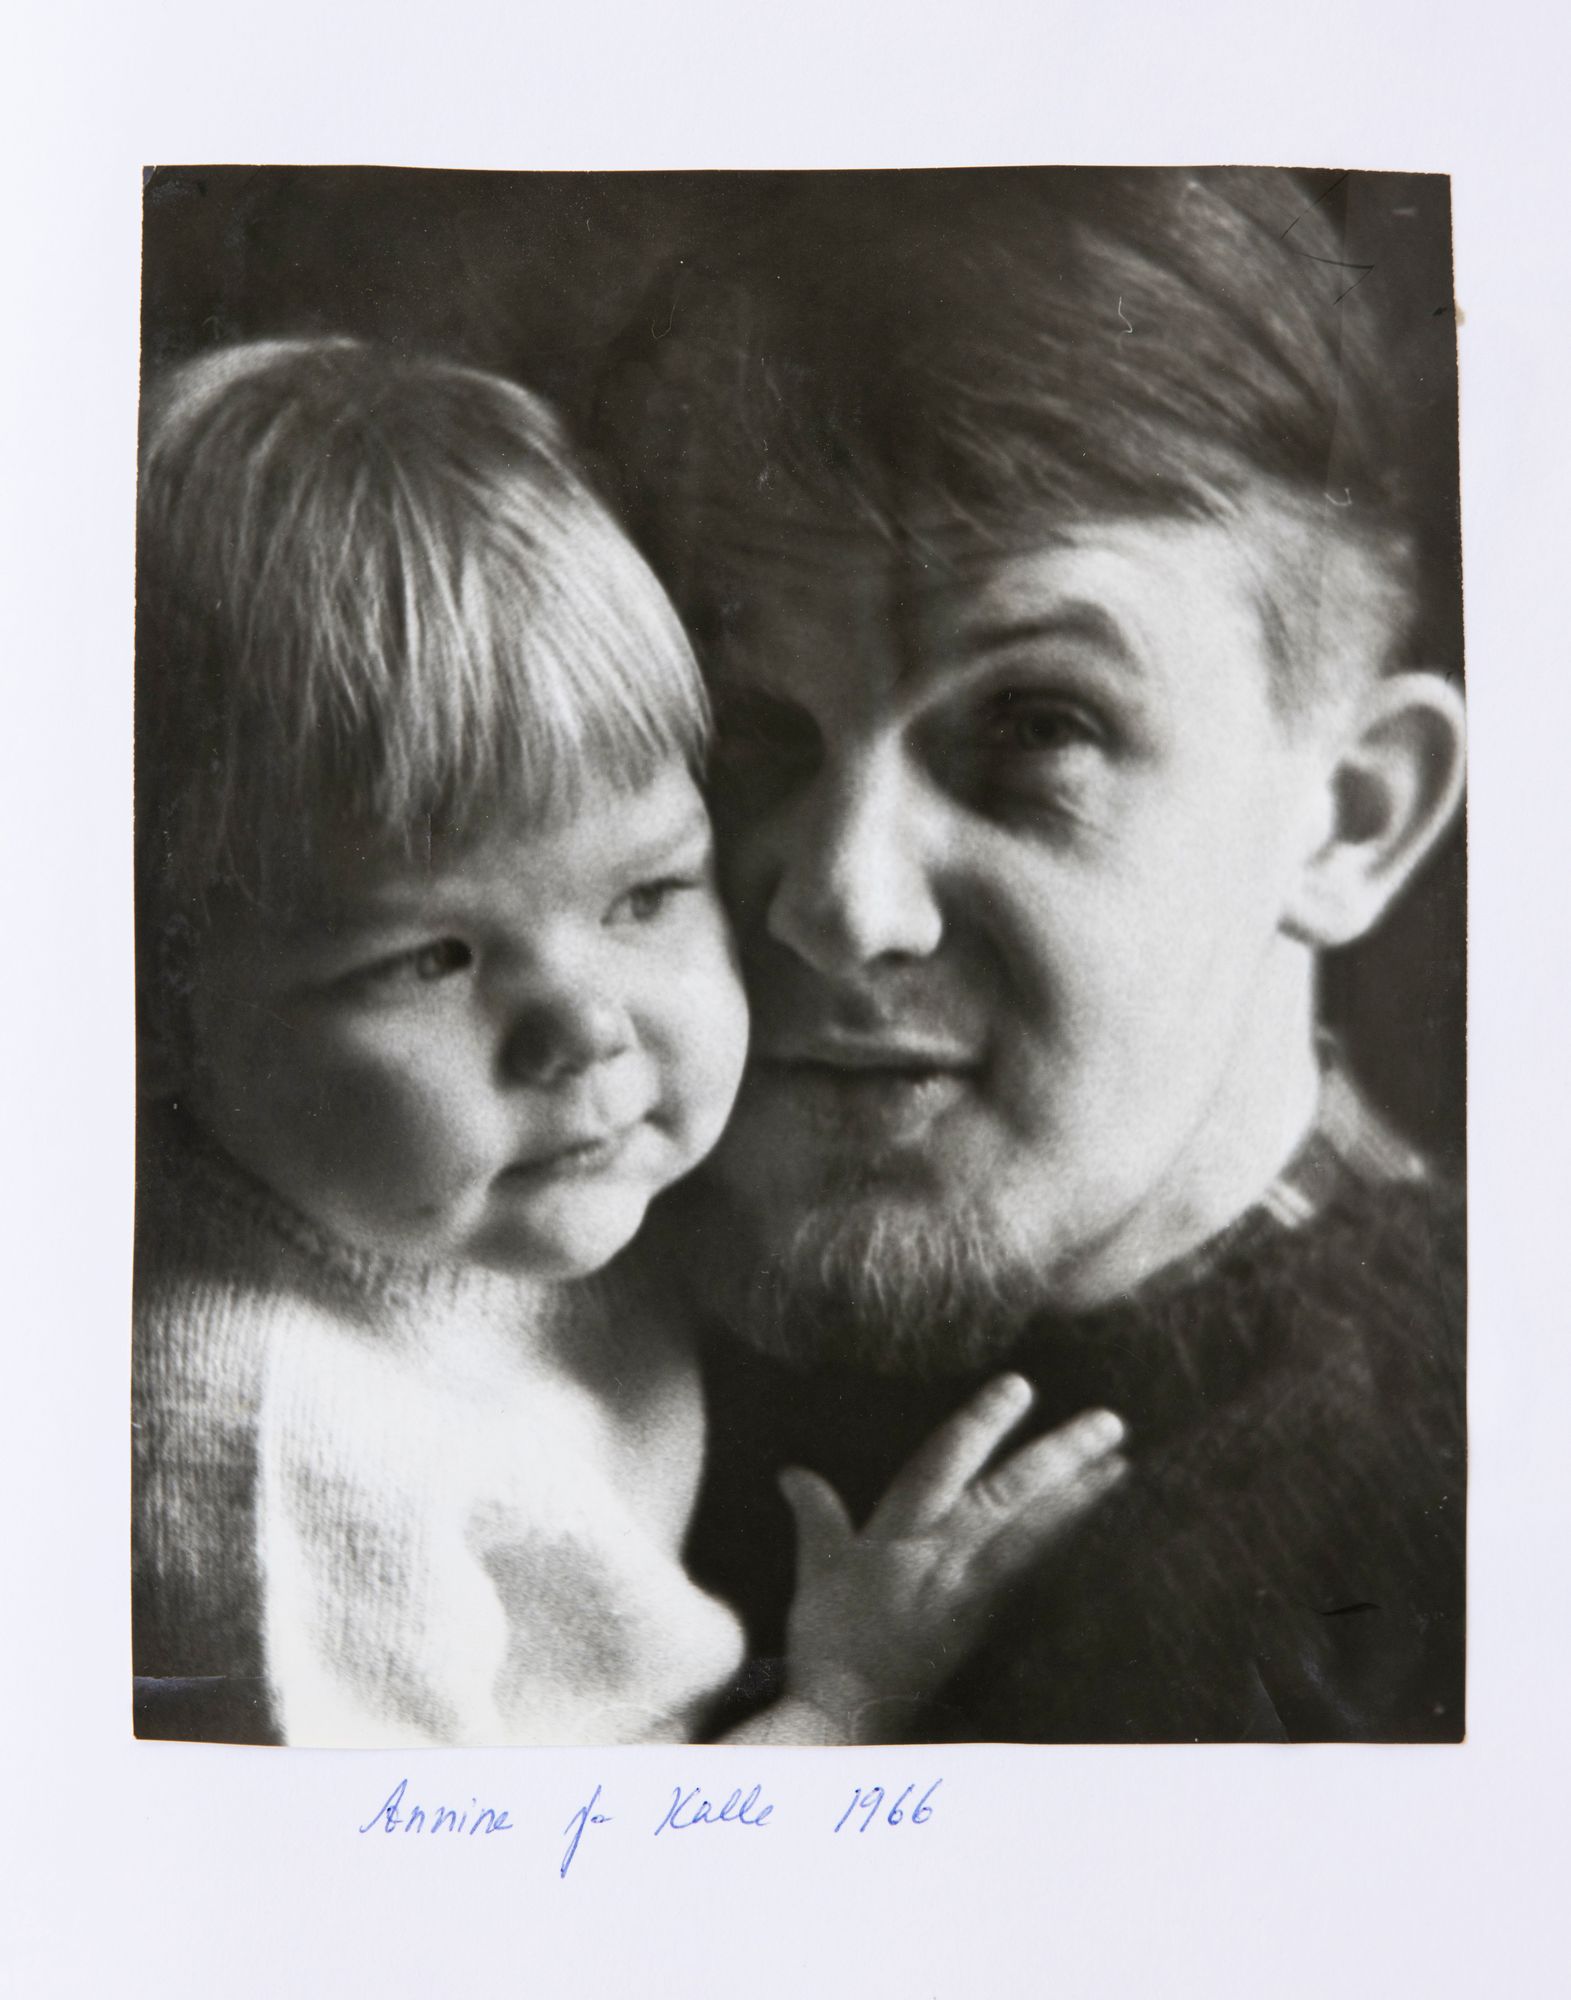 Annina 2-vuotiaana isänsä Kallen sylissä. ”Palloposki”, naurahtaa Annina nyt kuvalleen. © Holmbergin kotialbumi